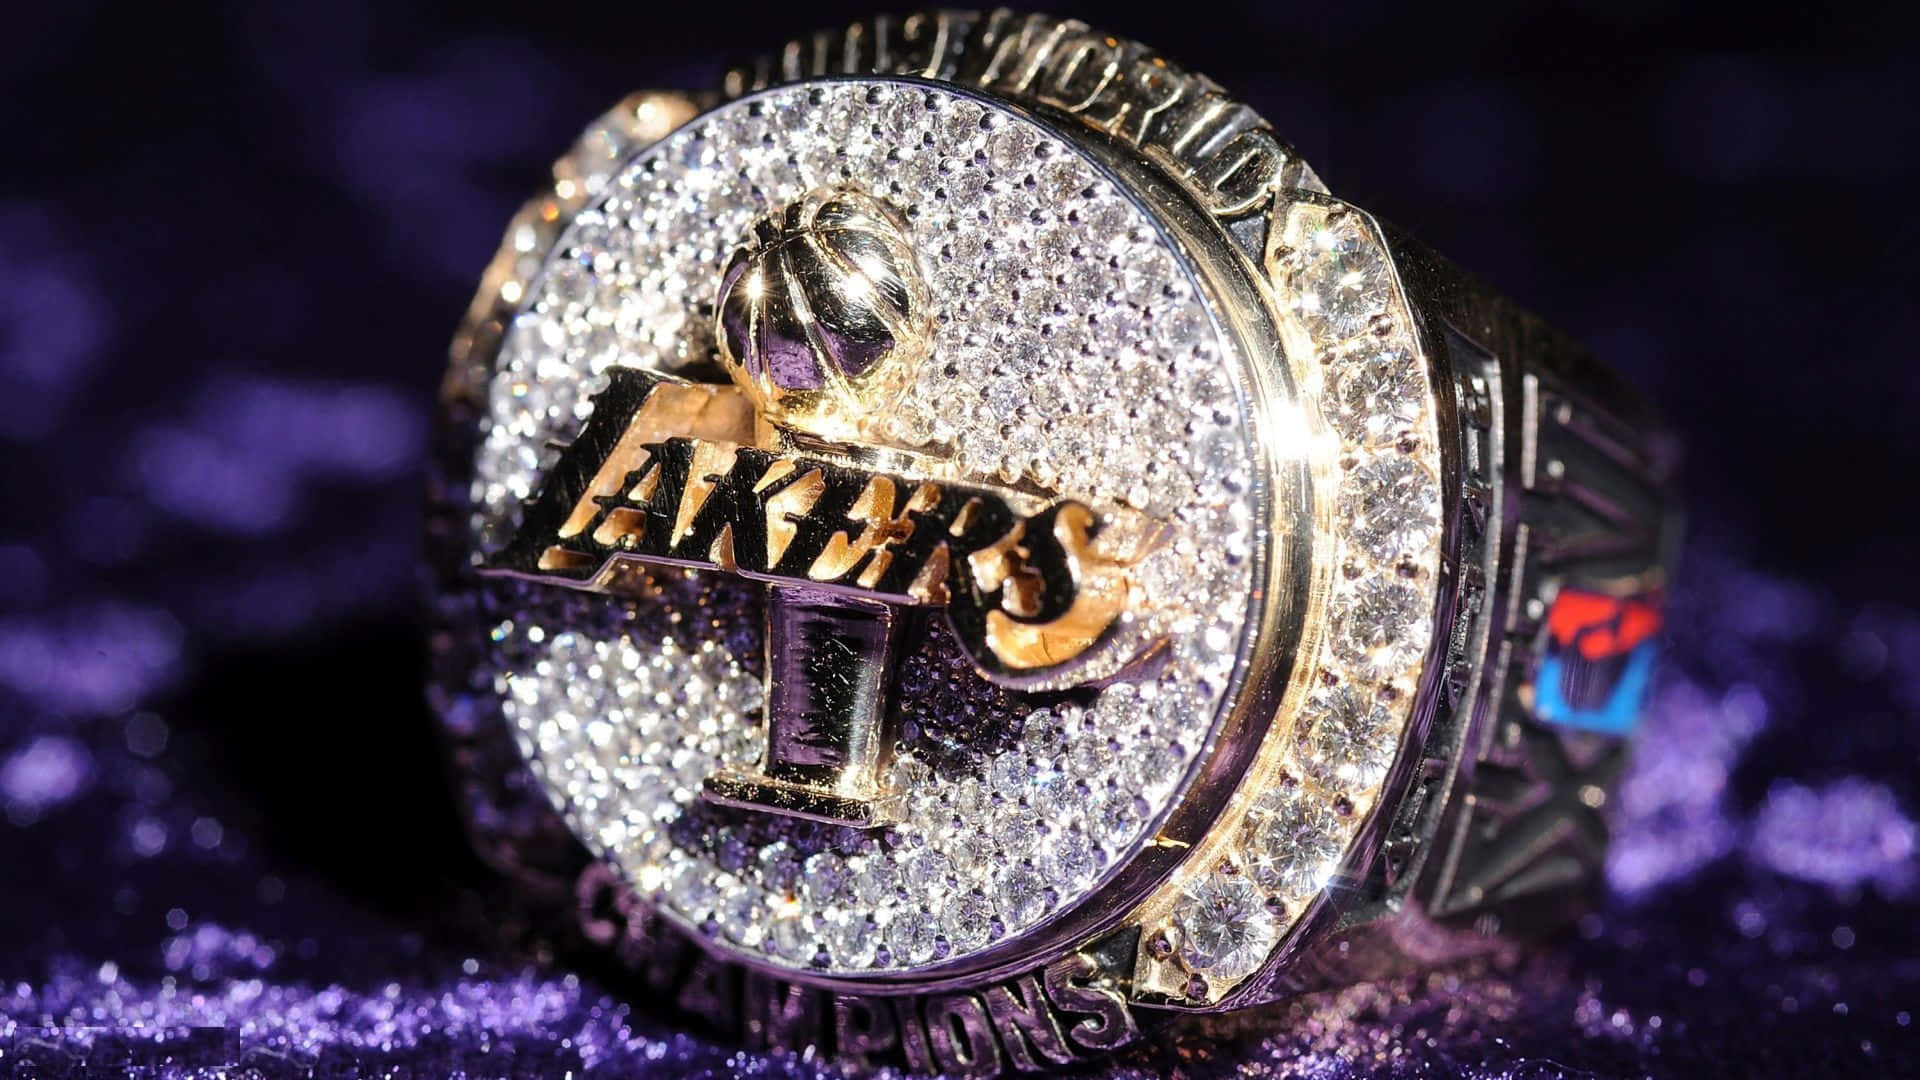 Zeigensie Ihrem Team Und Ihrer Stadt Etwas Liebe - Lakers Nation!